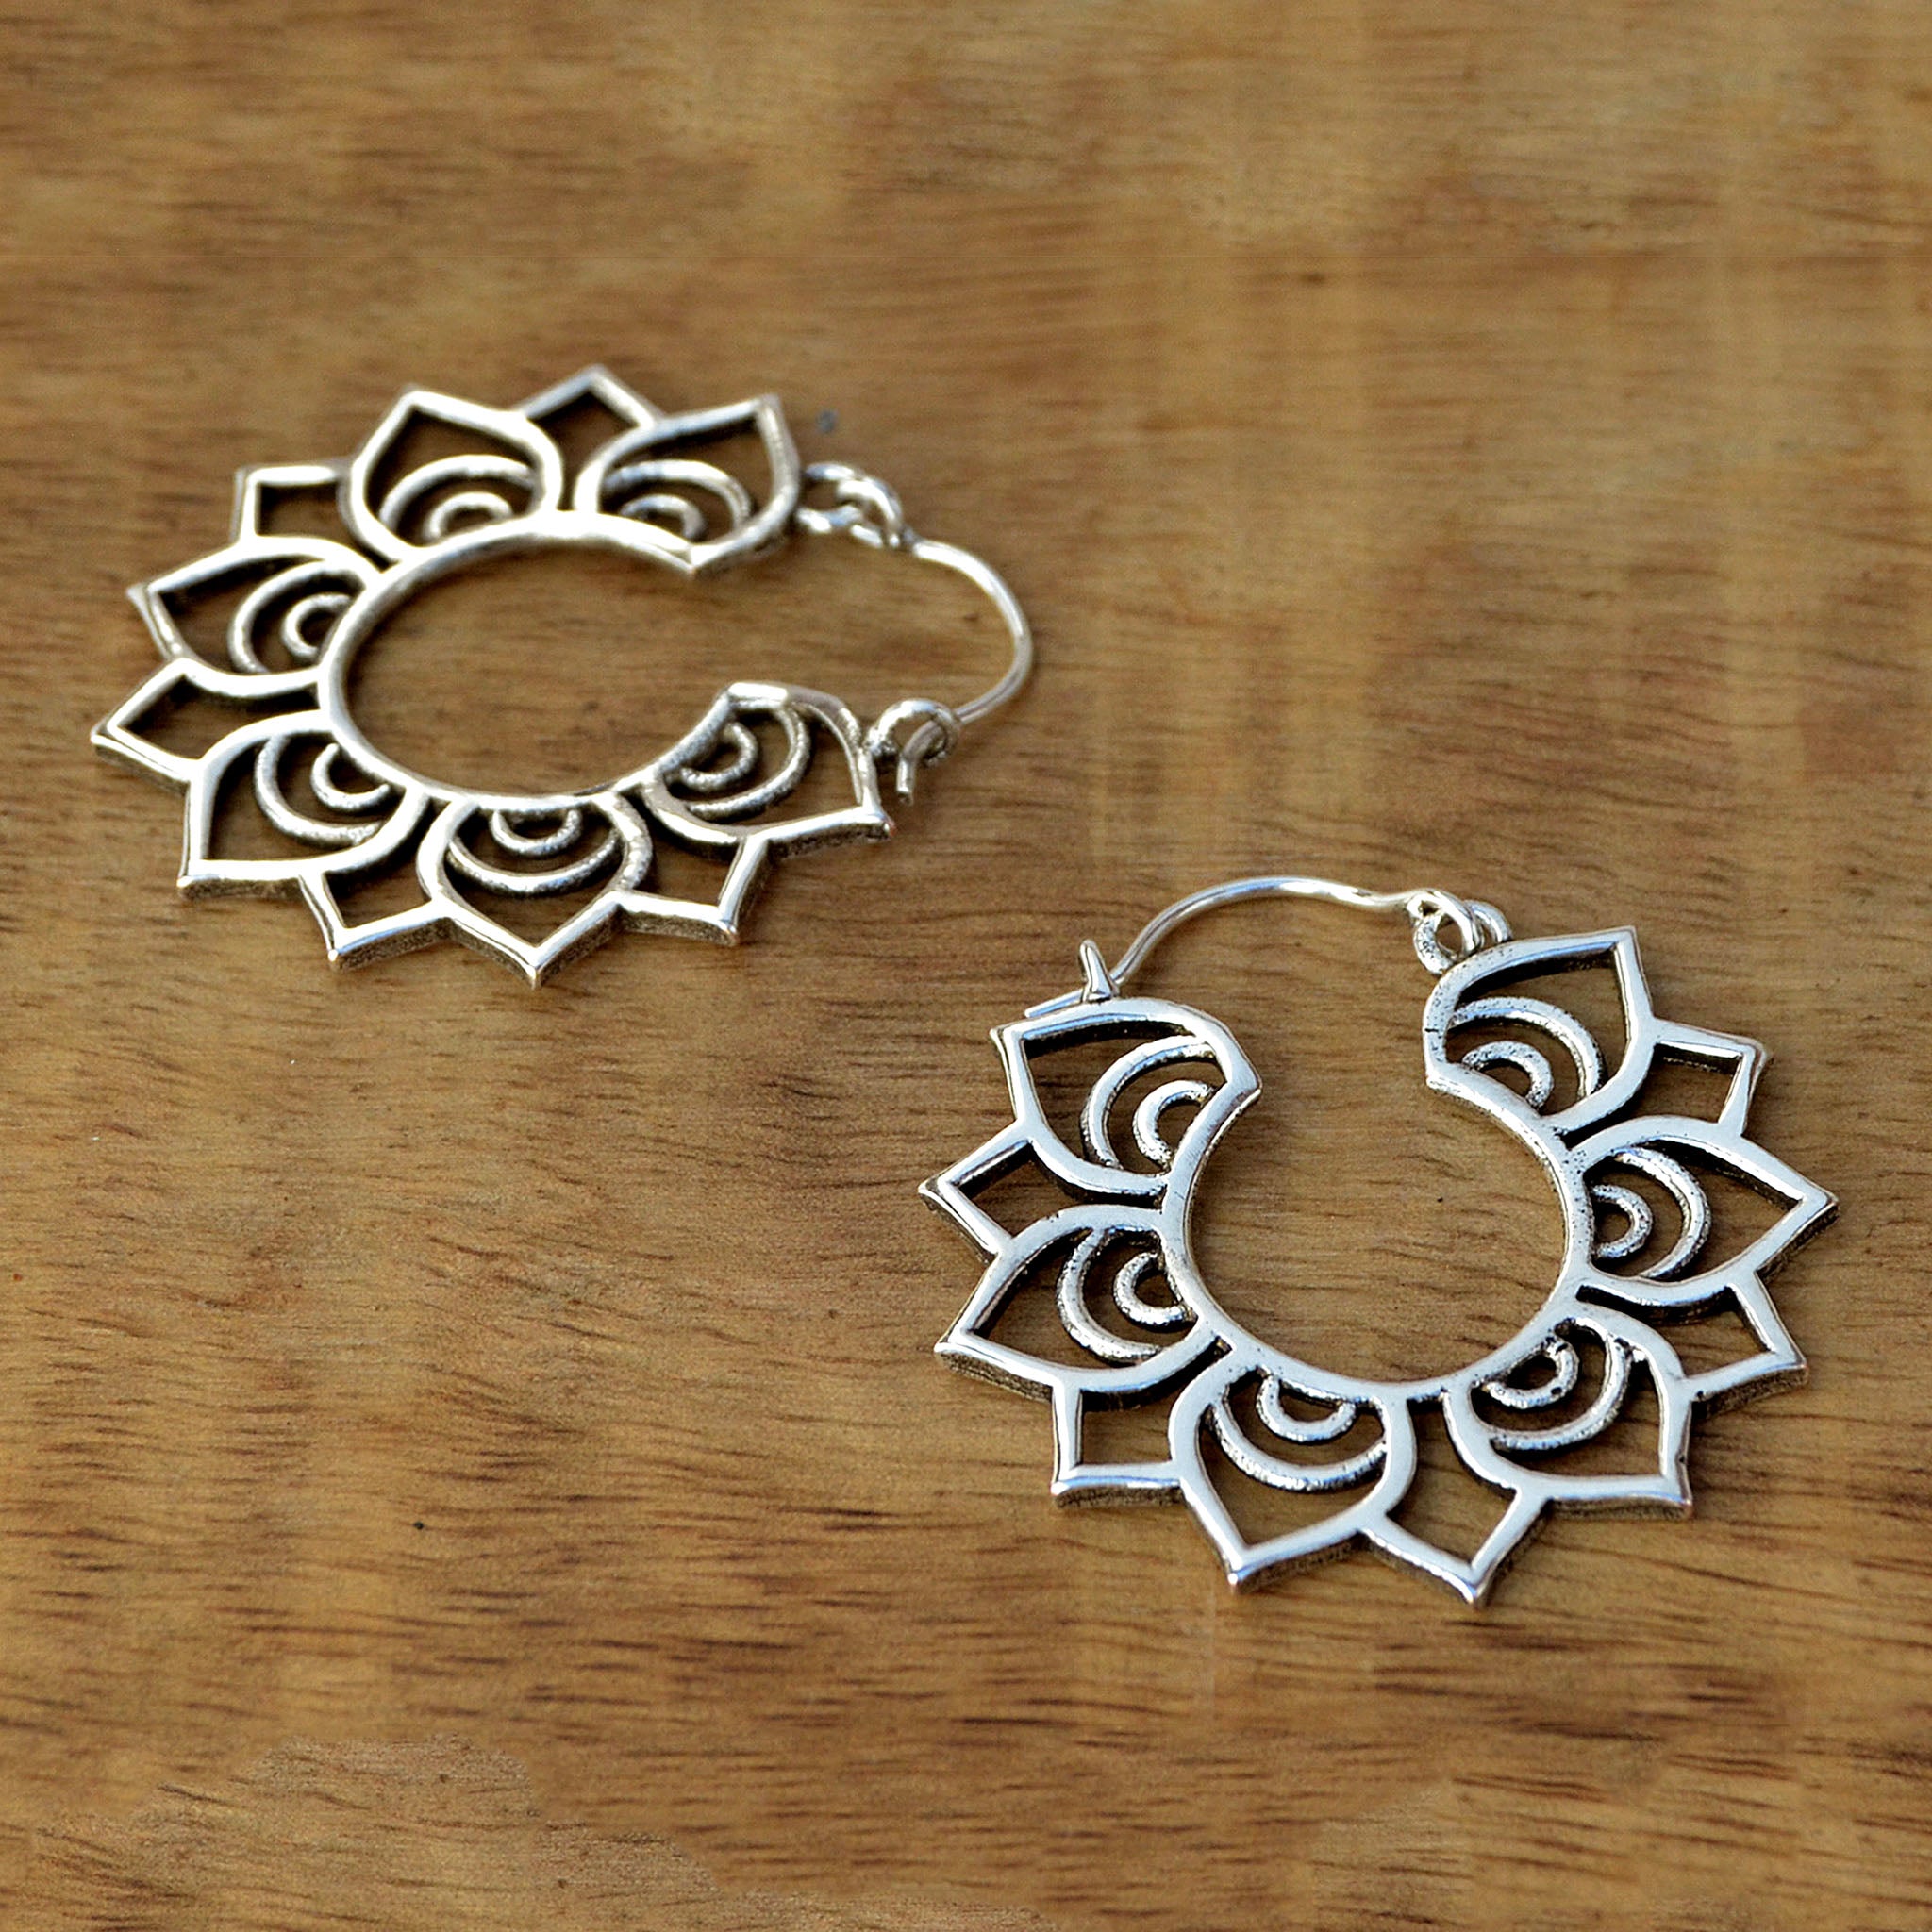 Silver lotus earrings